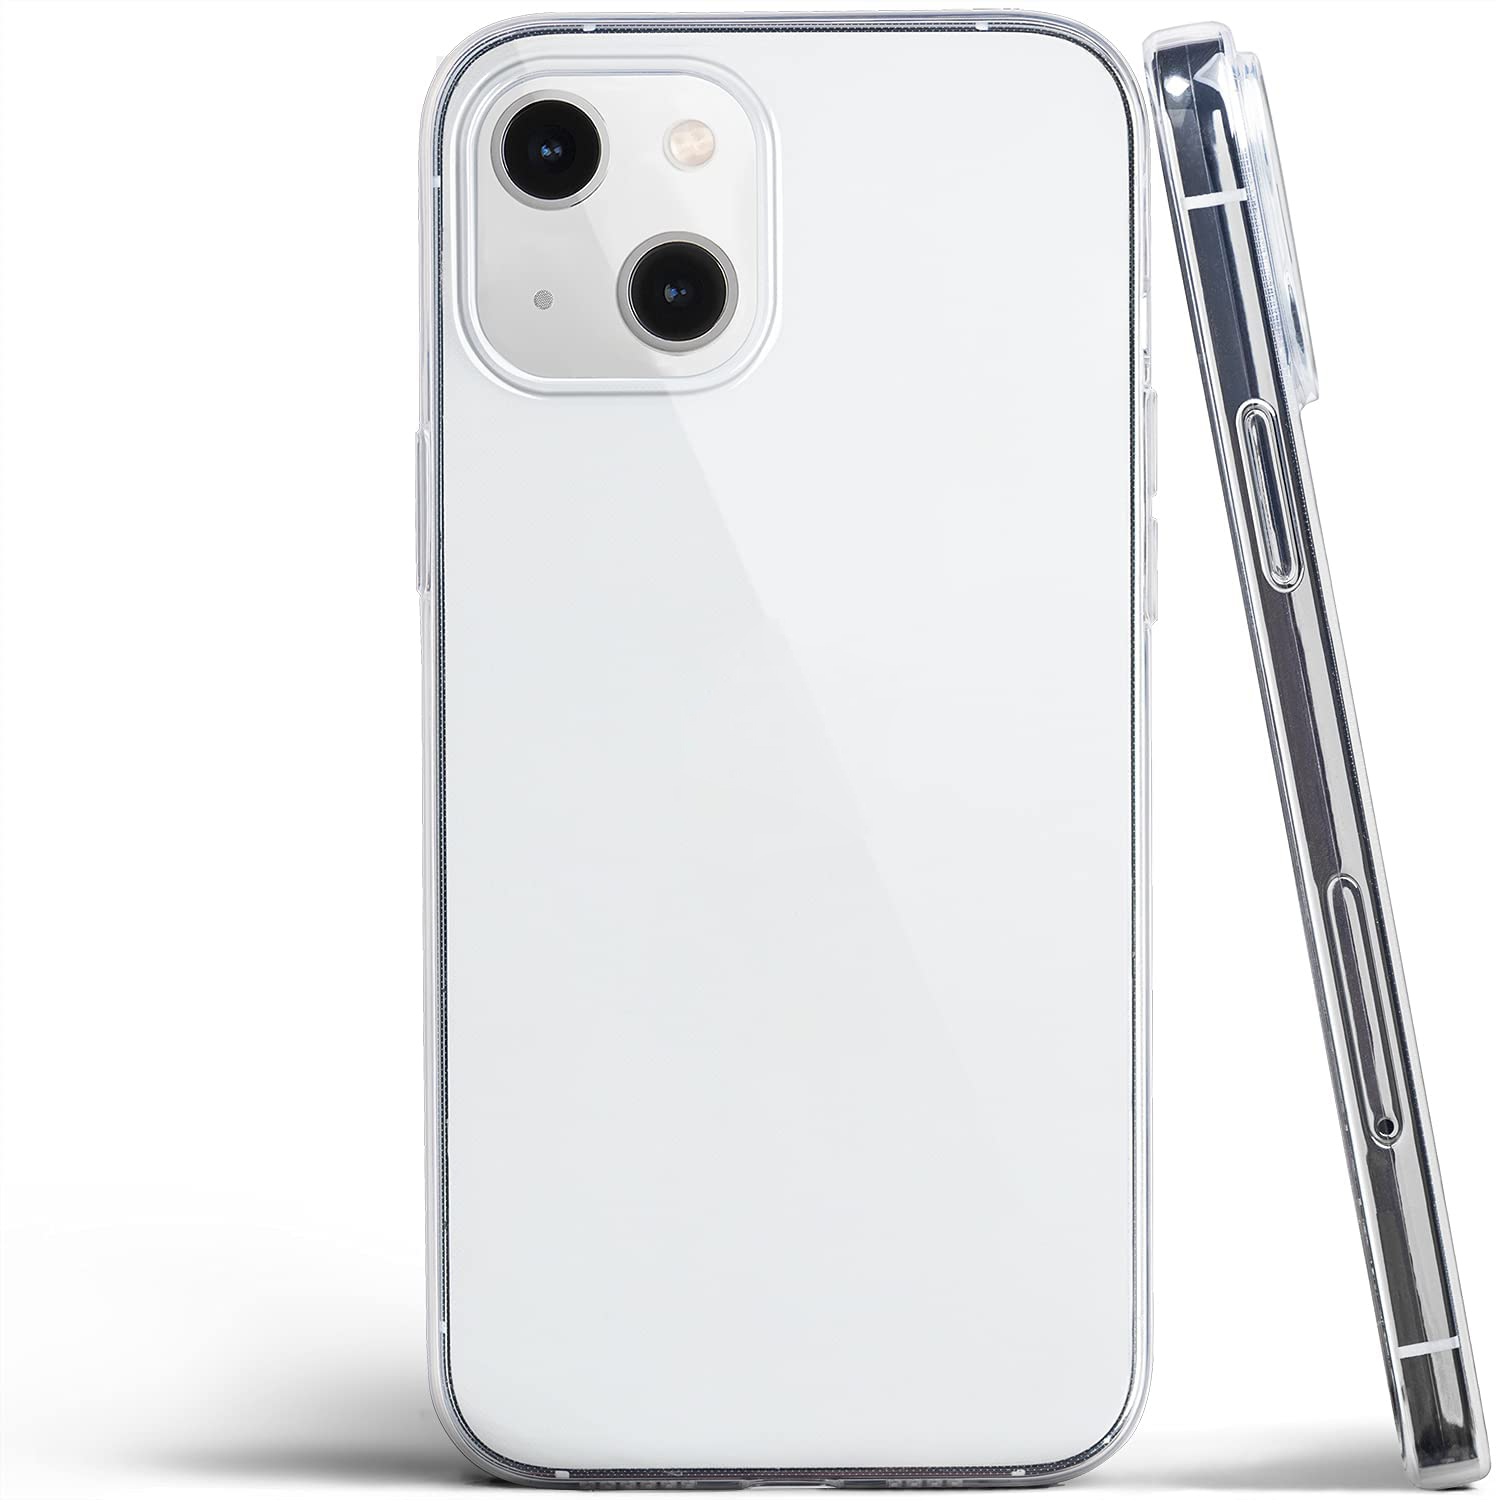 Ốp lưng silicon dẻo trong suốt cho iPhone 13 Mini hiệu Ultra Thin siêu mỏng 0.6mm - Hàng nhập khẩu